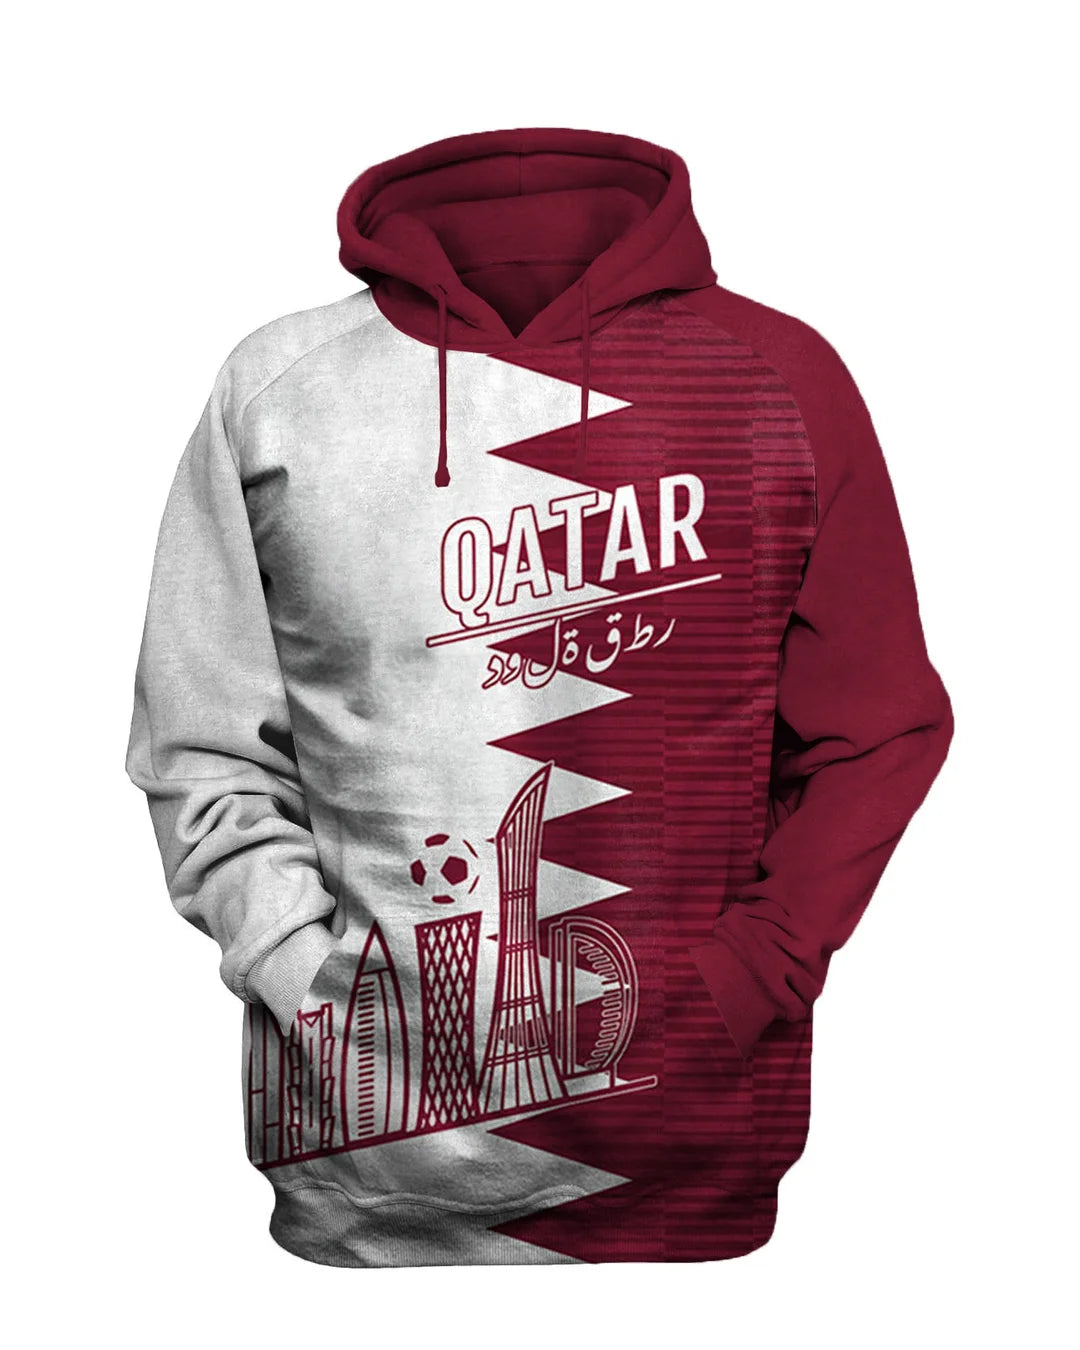 Qatar 2022 Football Printed Sweatshirt Set - DUVAL